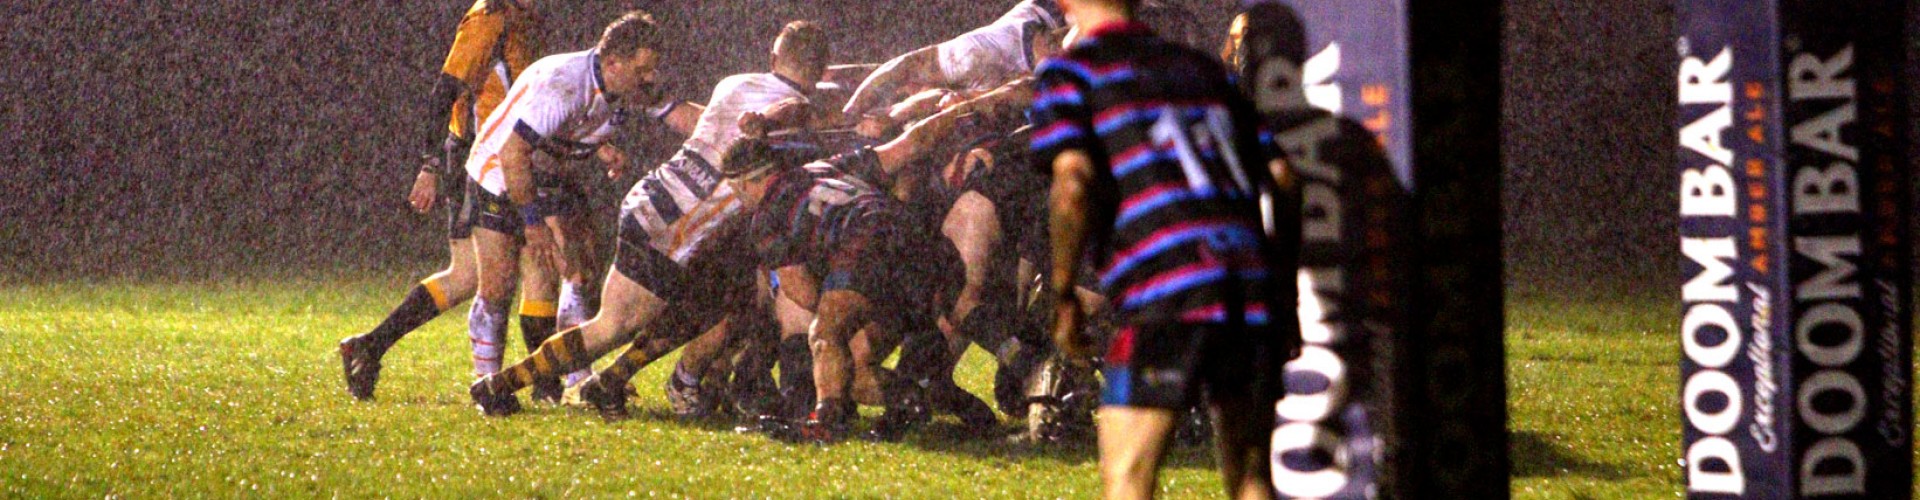 rugby scrum in the rain